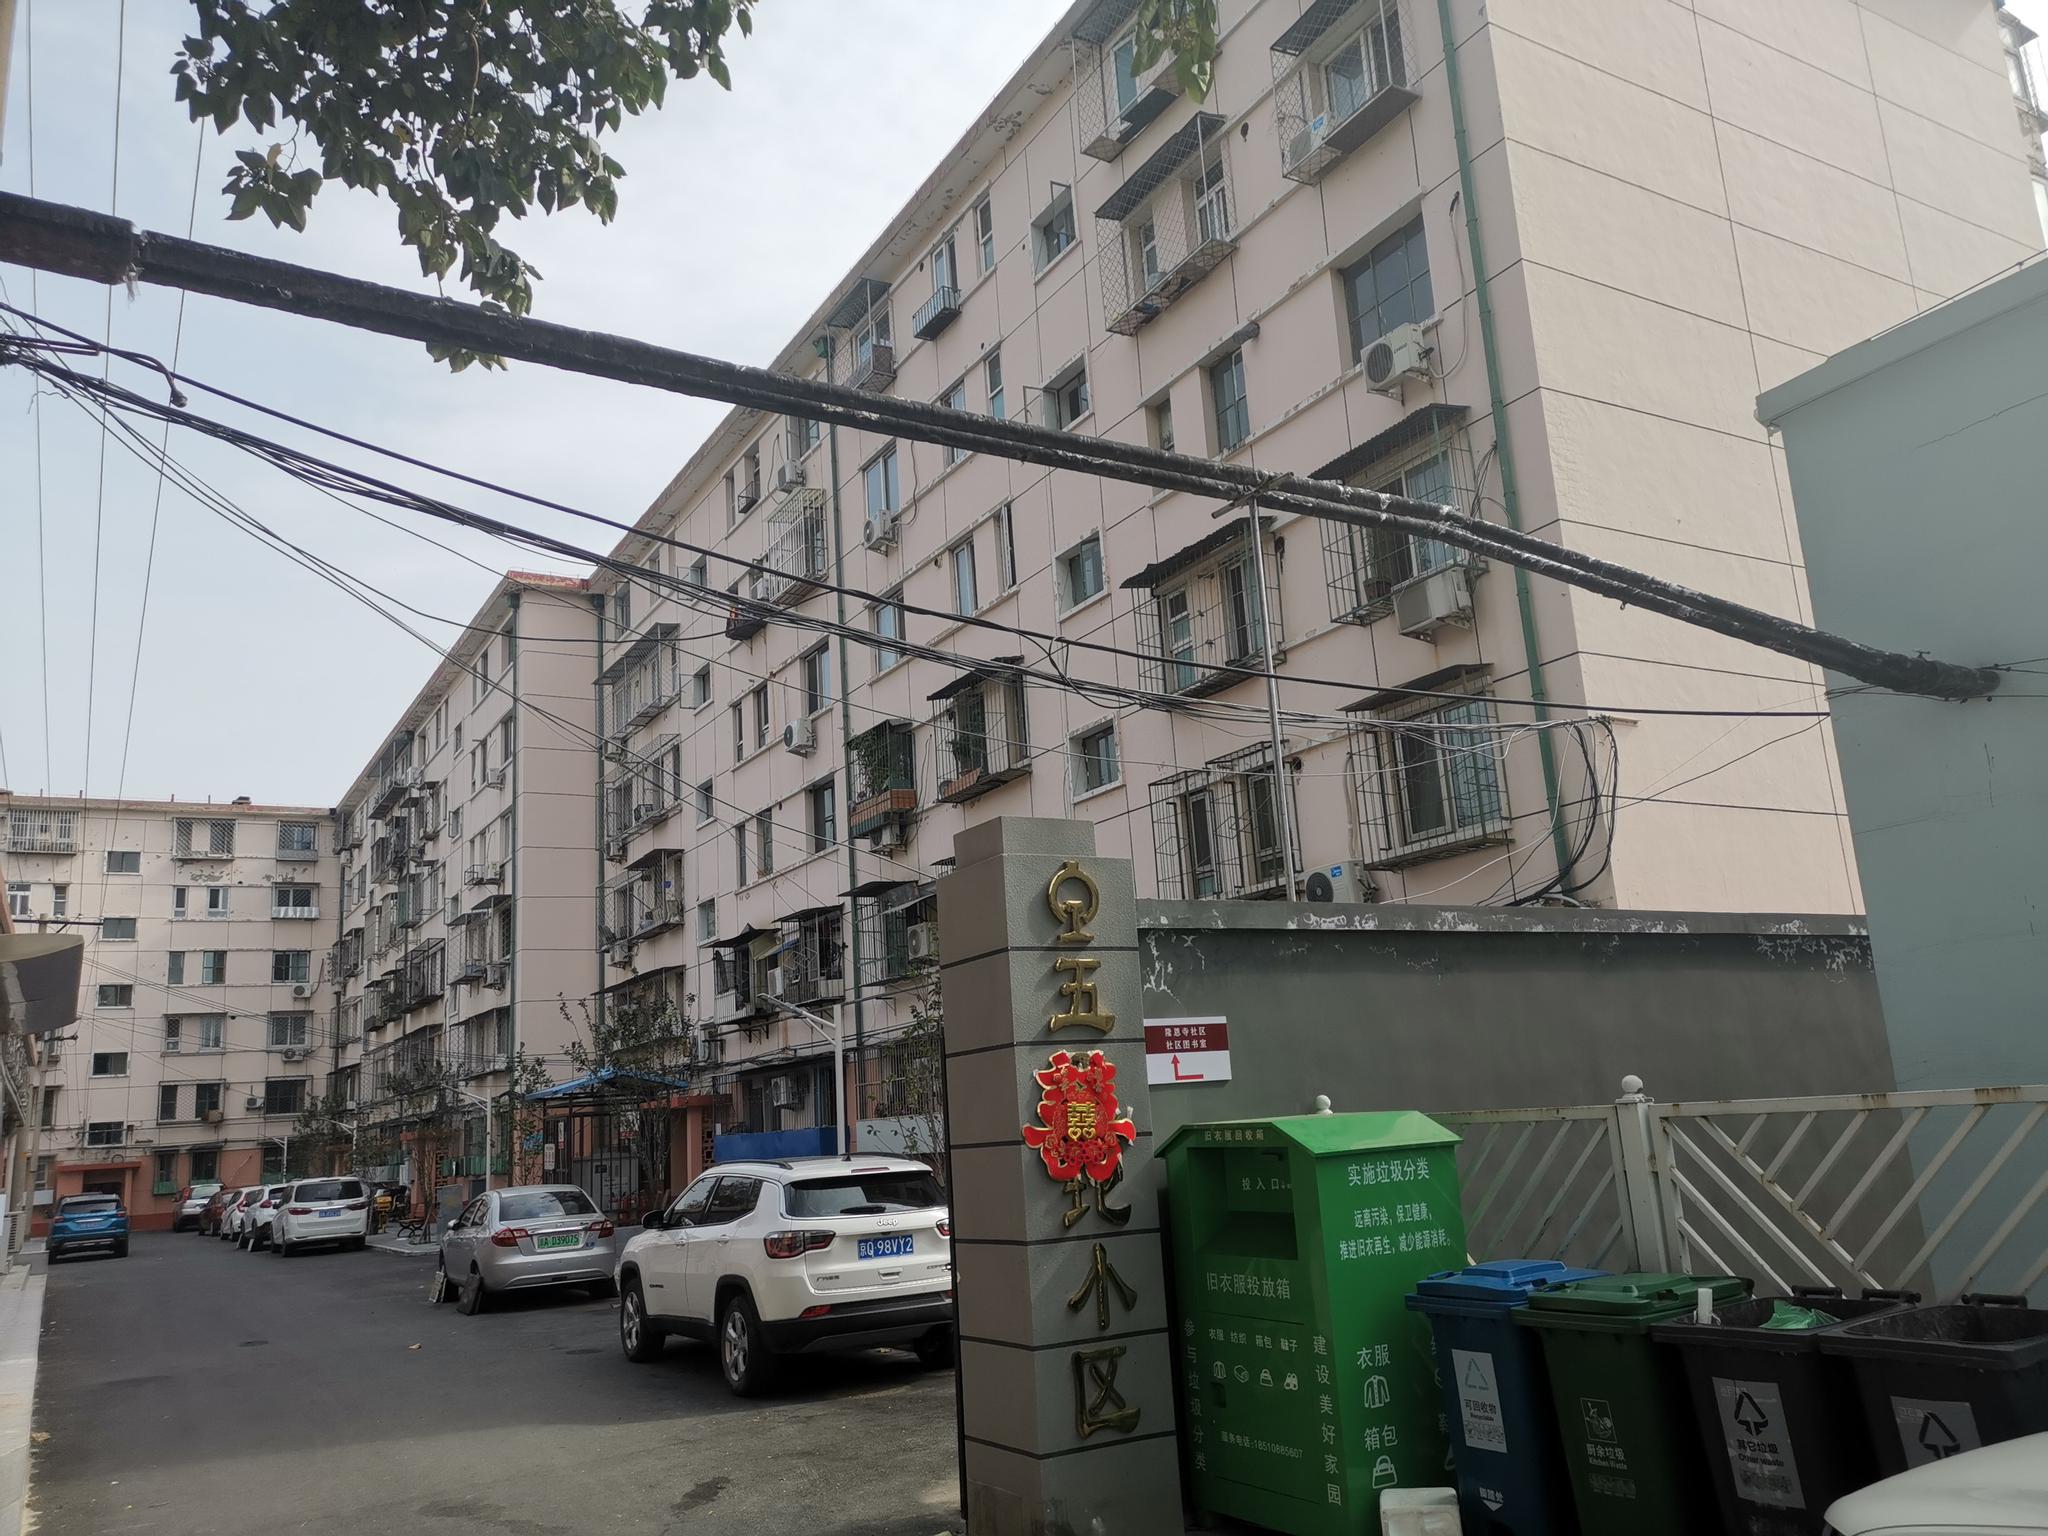 受到限竞房入市的影响，五里坨小区二手房均价近两个月下降约10%。新京报记者 张建 摄